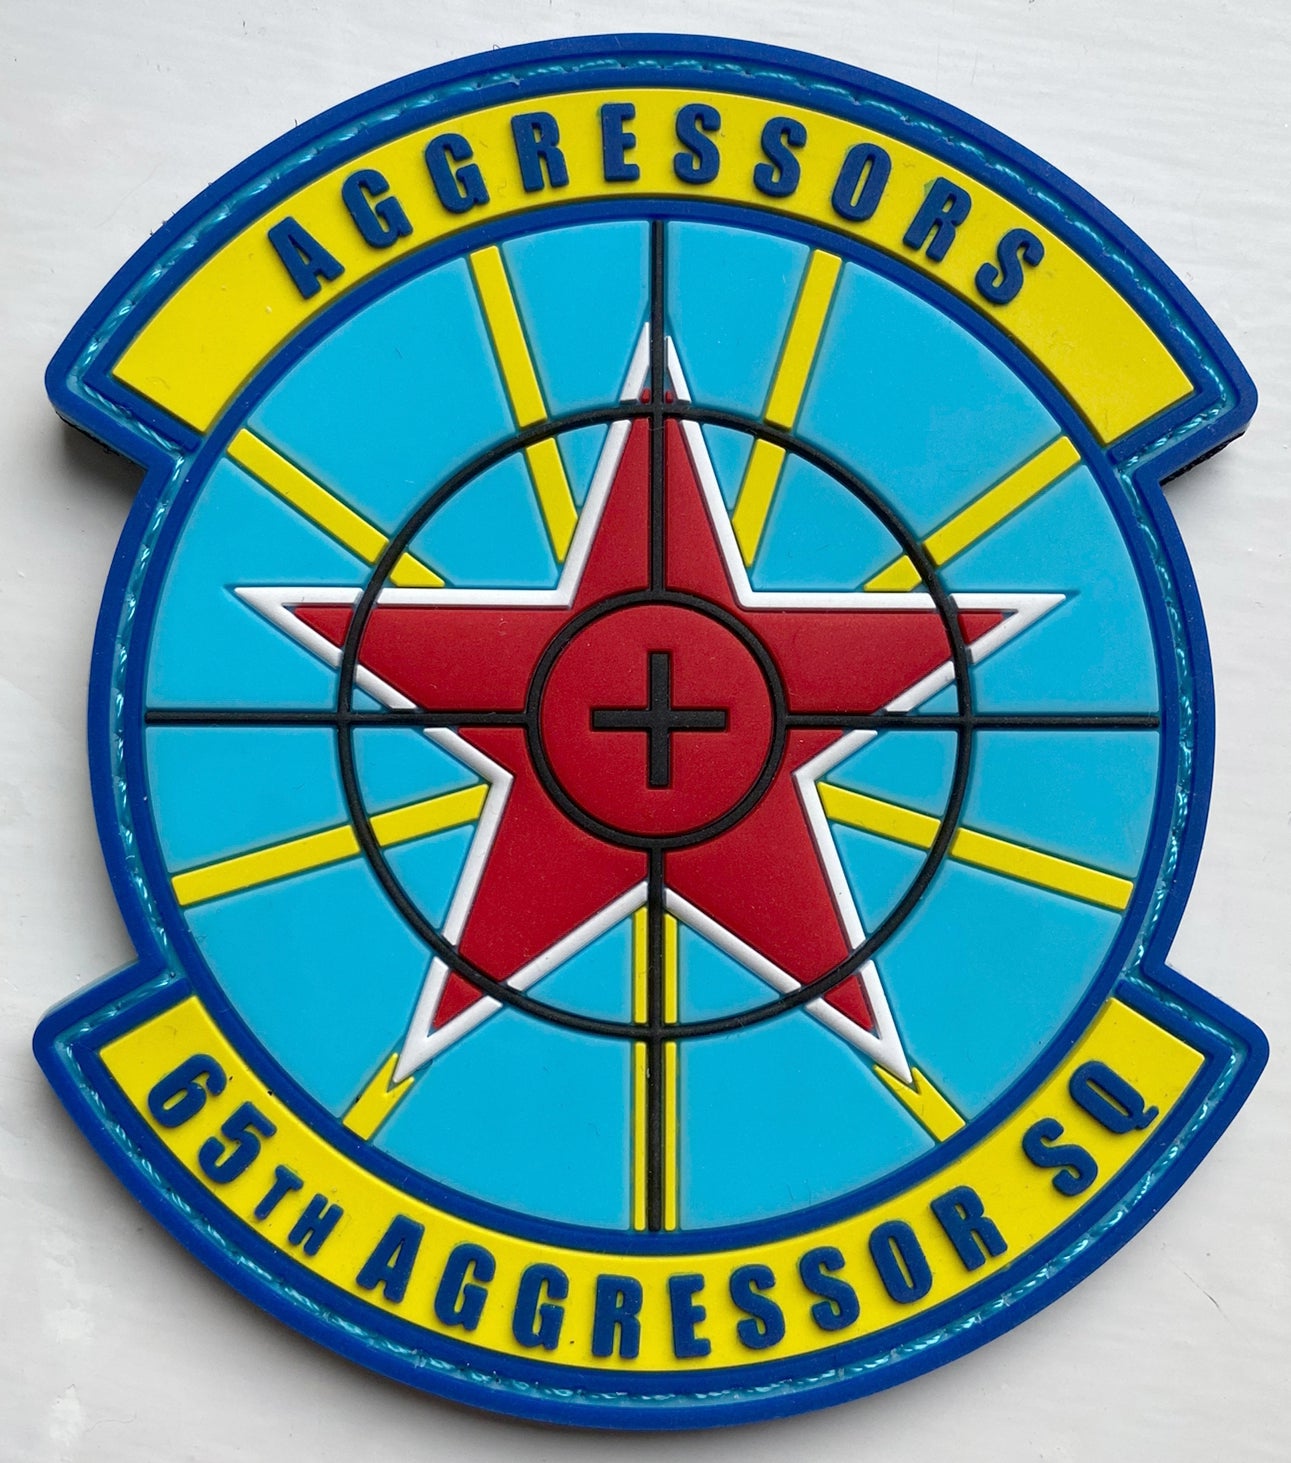 64th Aggressor Squadron photo